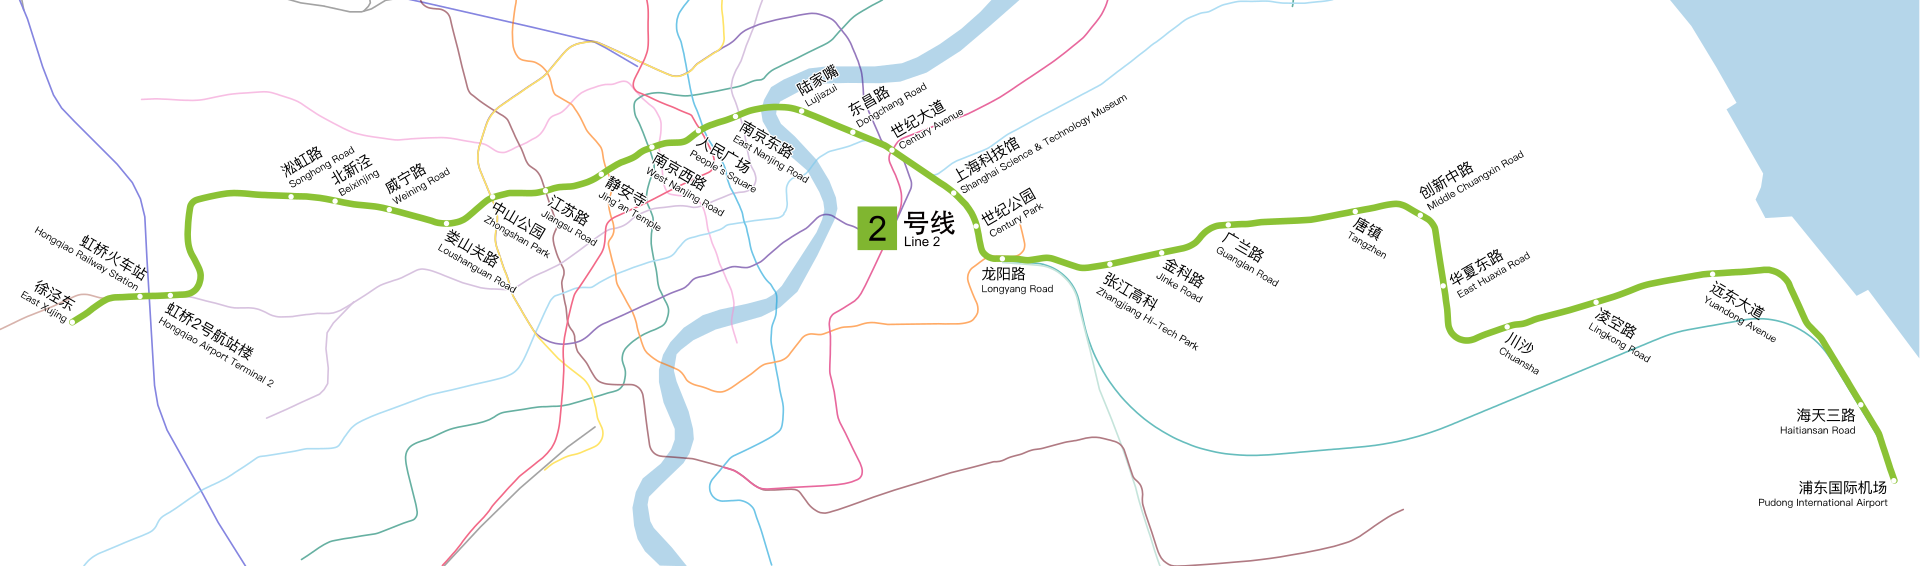 上海地铁2号线又有新列车加入:全线8节列车,运能仍然有缺口